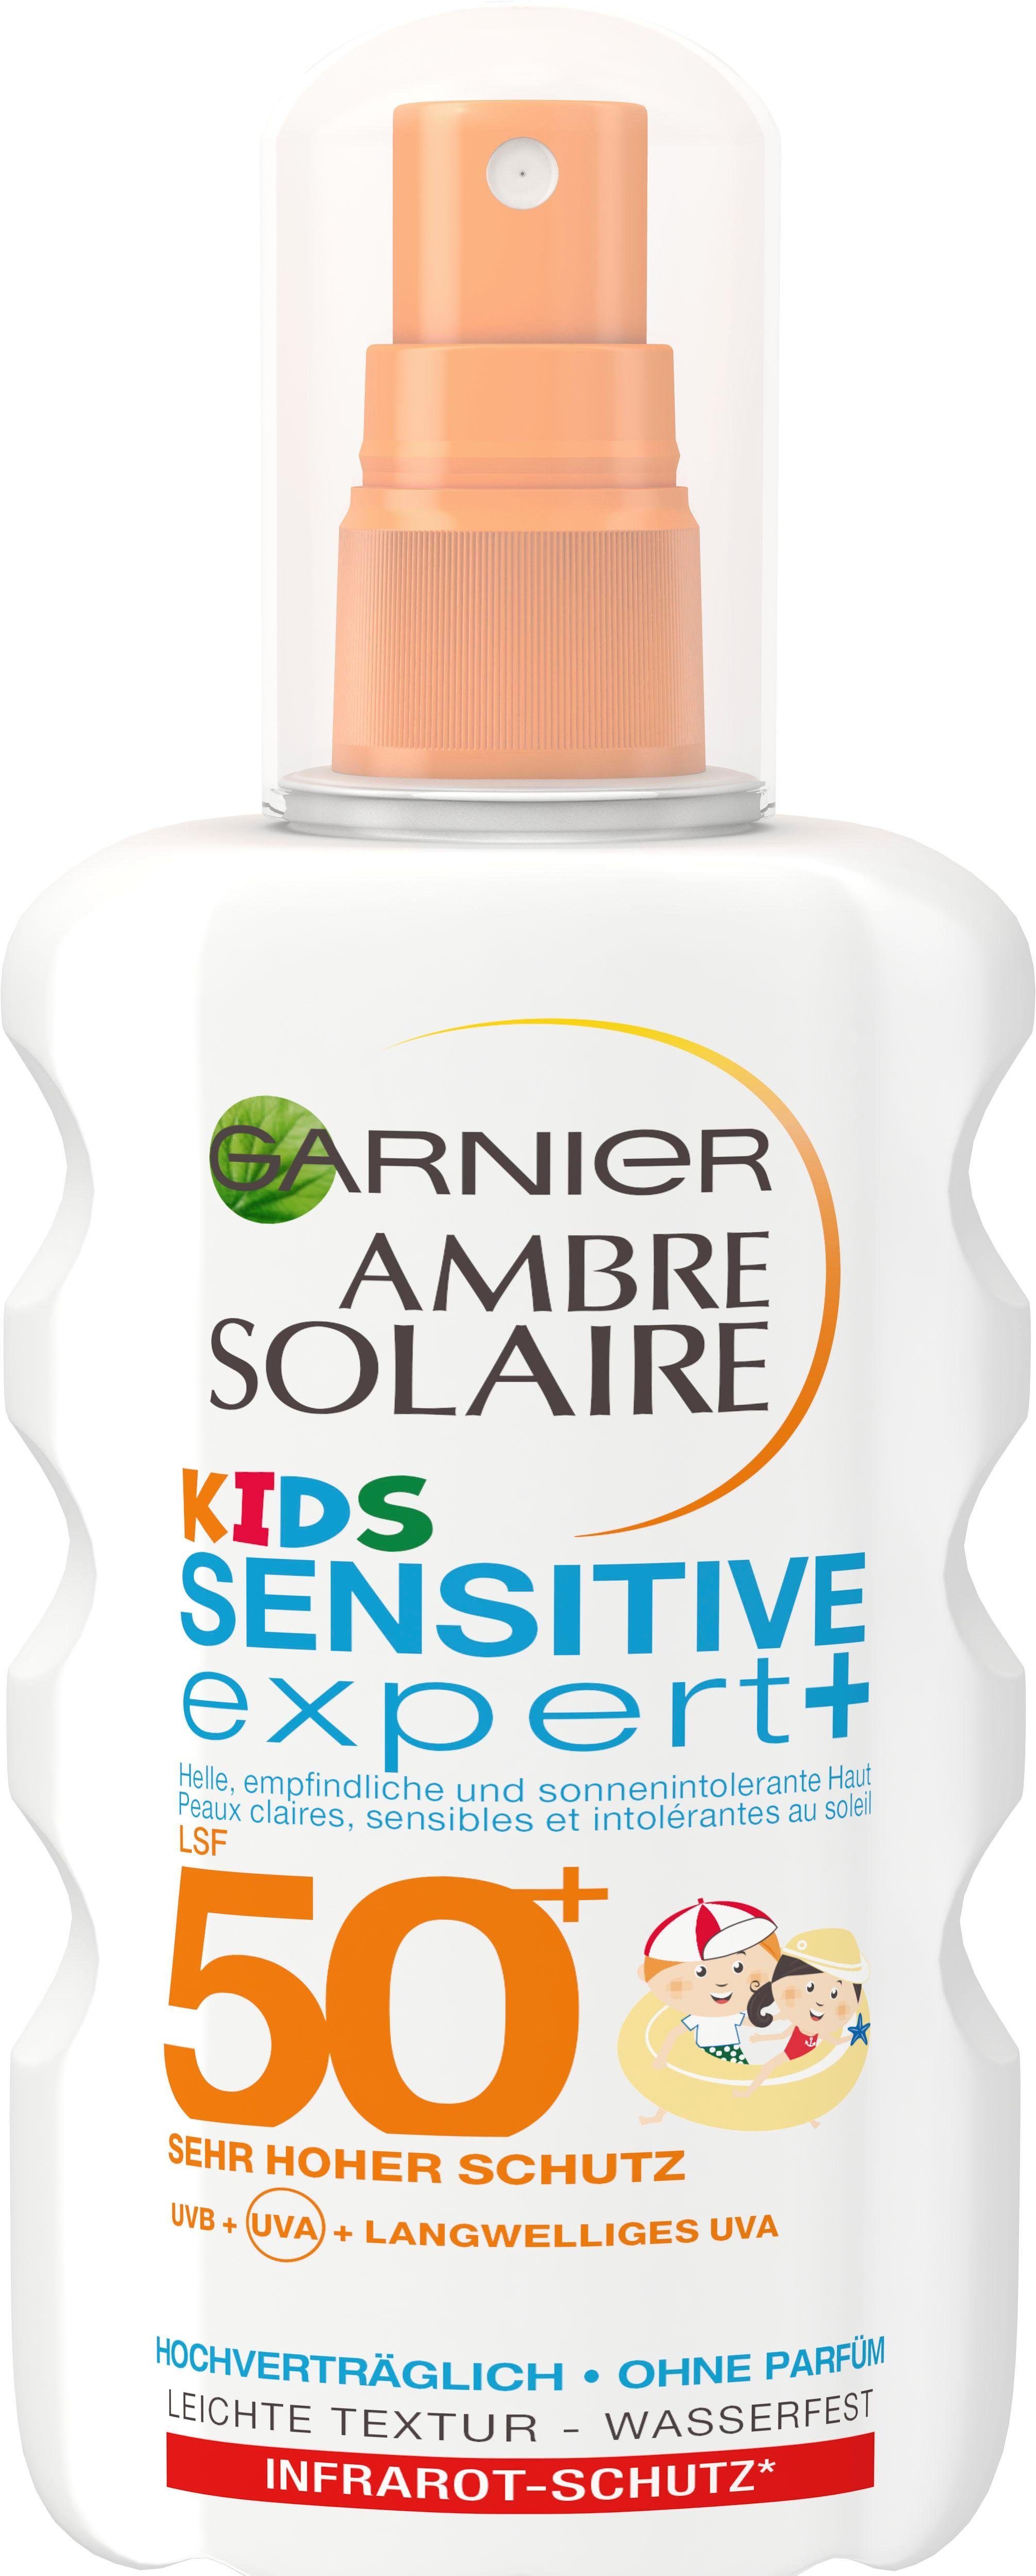 Solaire Sensitive Kids Sonnenschutzspray Expert Ambre GARNIER 50+ LSF